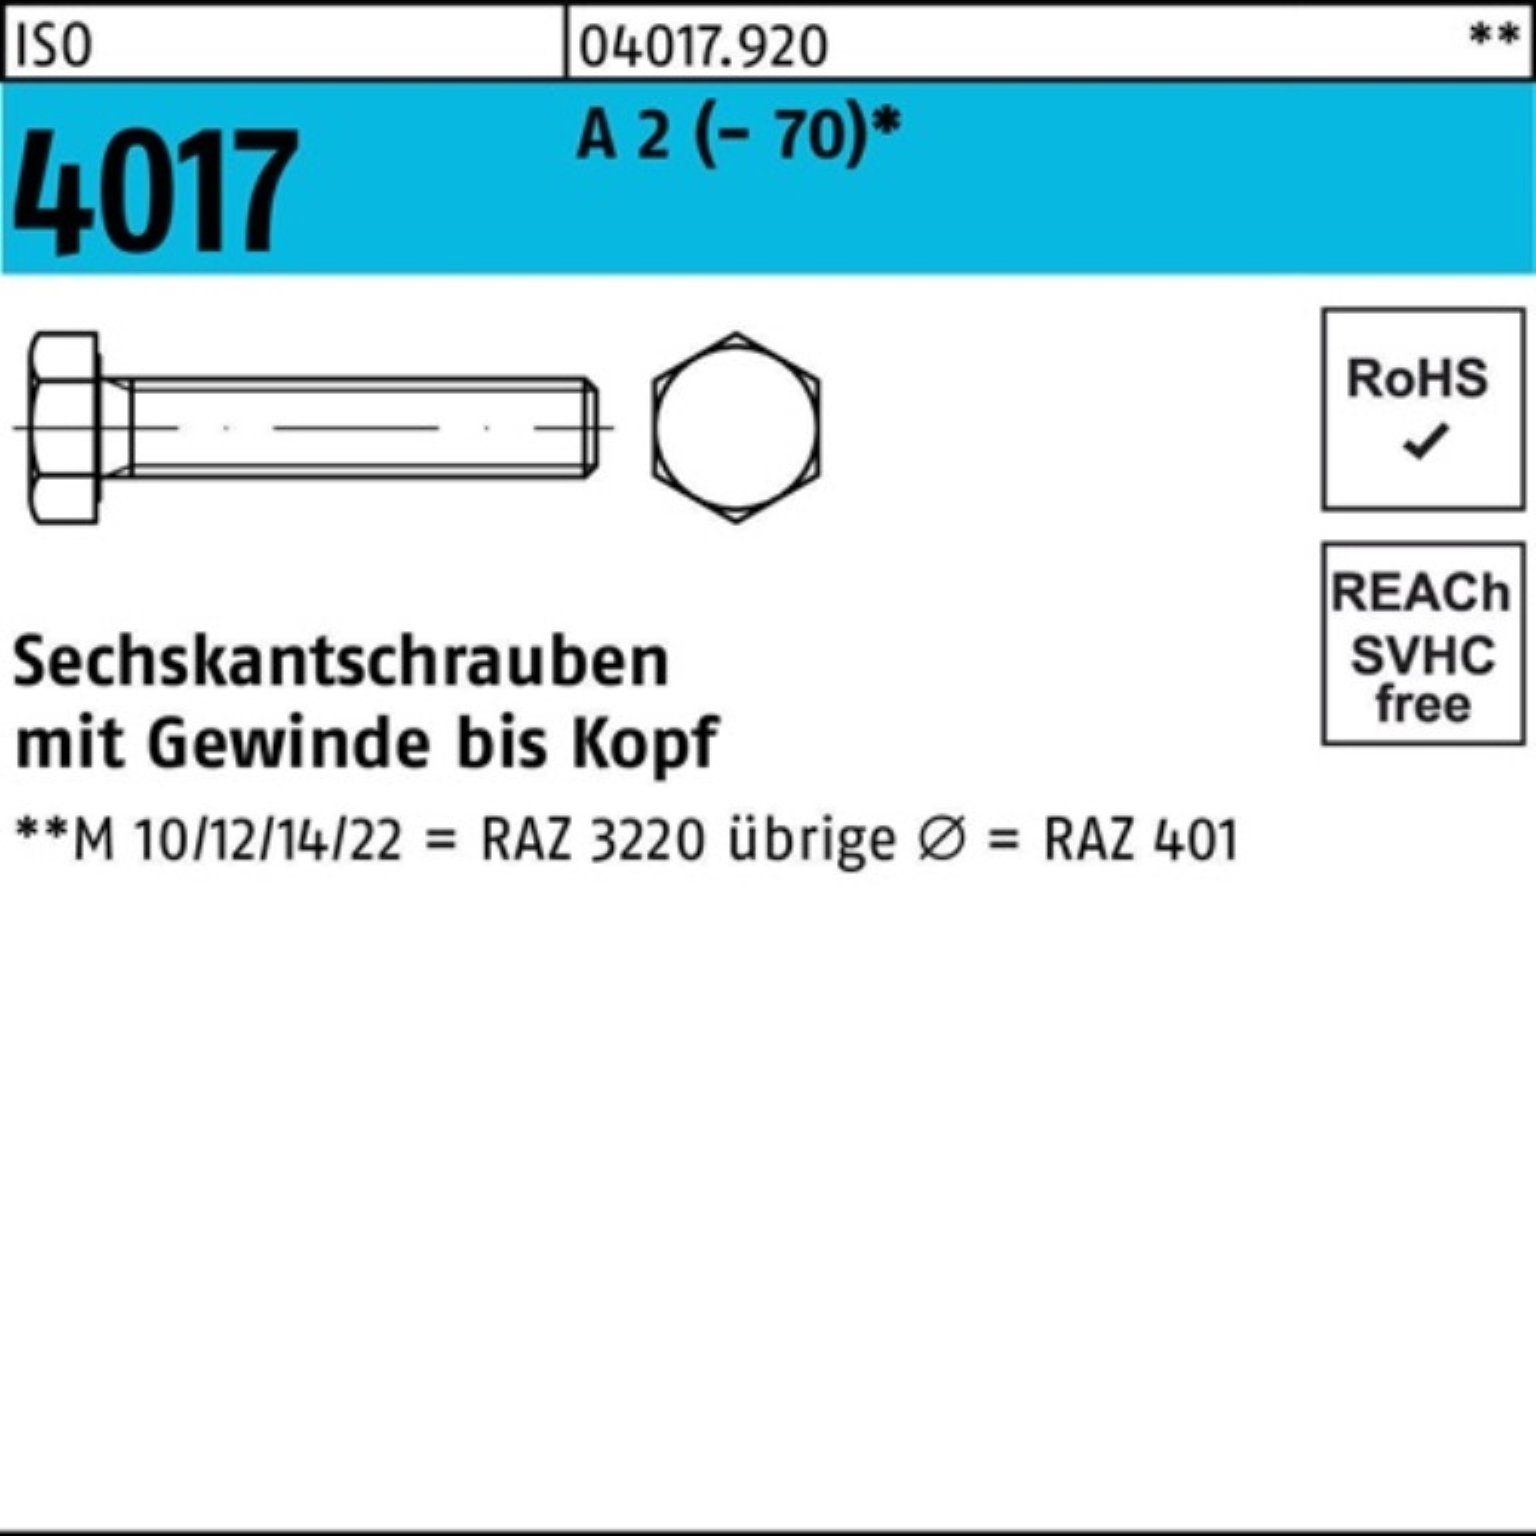 Bufab A Pack Sechskantschraube (70) 200 ISO 200er Sechskantschraube VG 35 M6x 4017 2 Stück